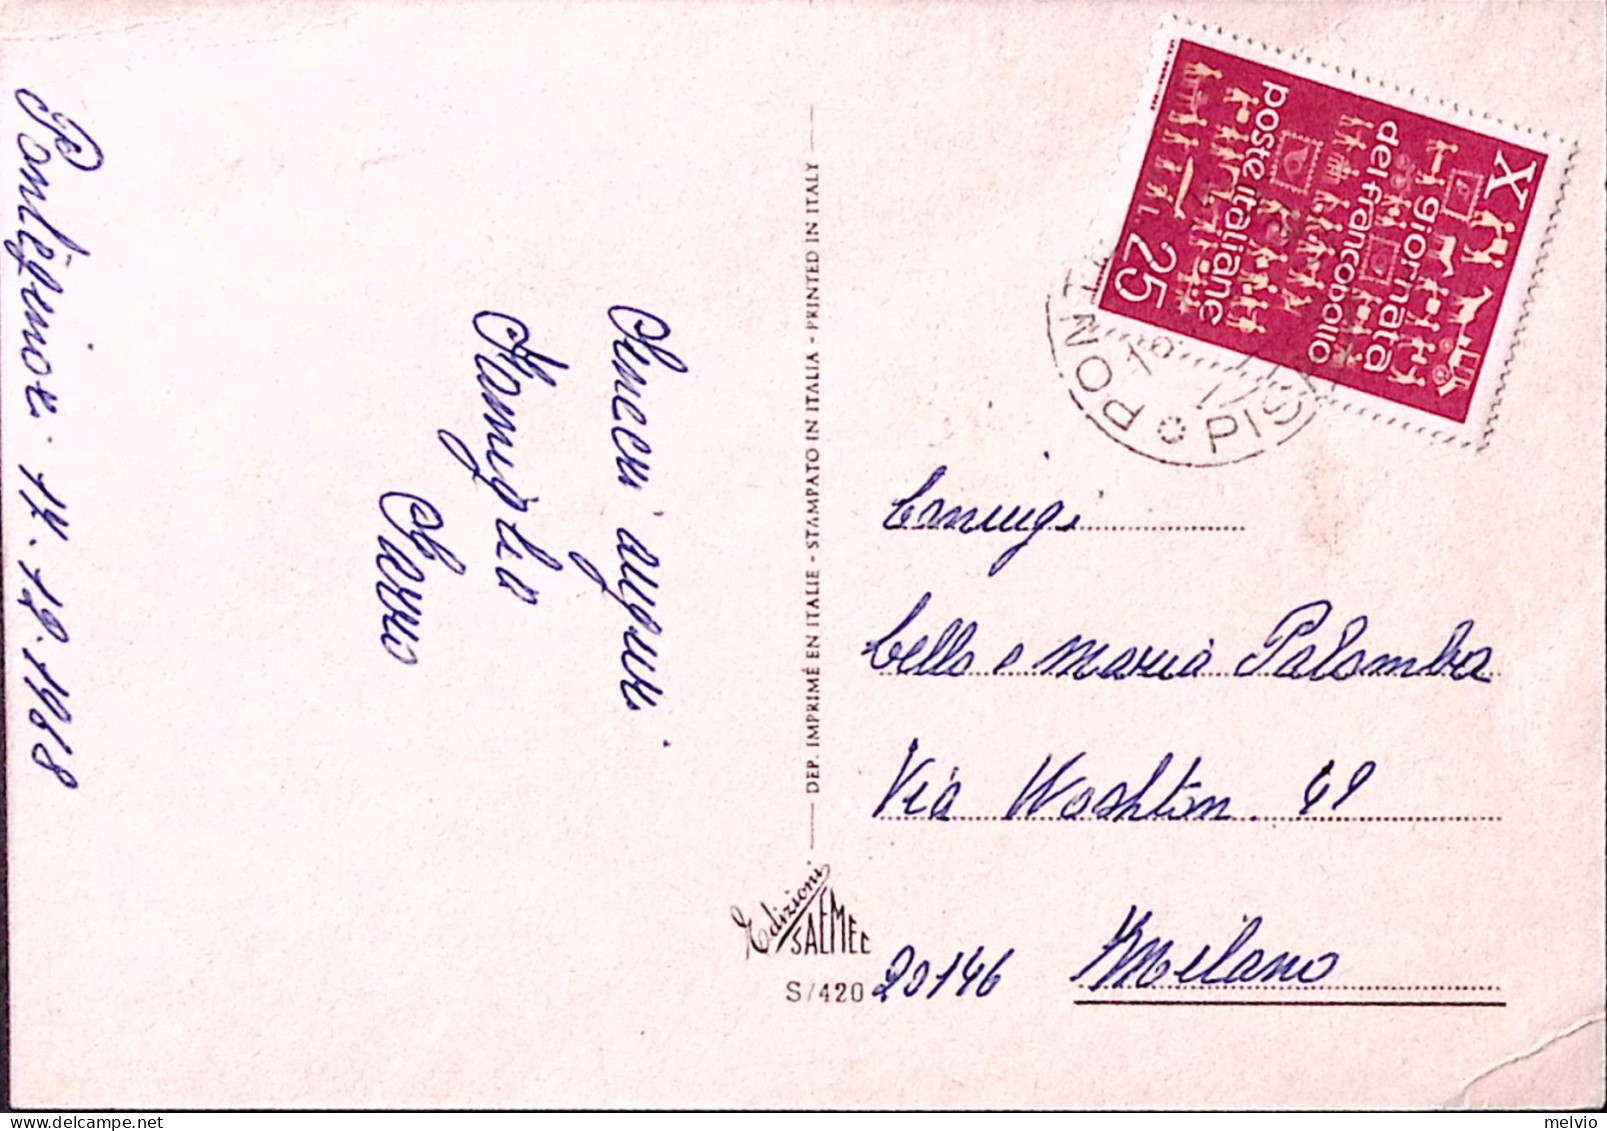 1968-GIORNATA FRANCOBOLLOl'68 Lire 25 Isolato Su Cartolina - 1961-70: Poststempel